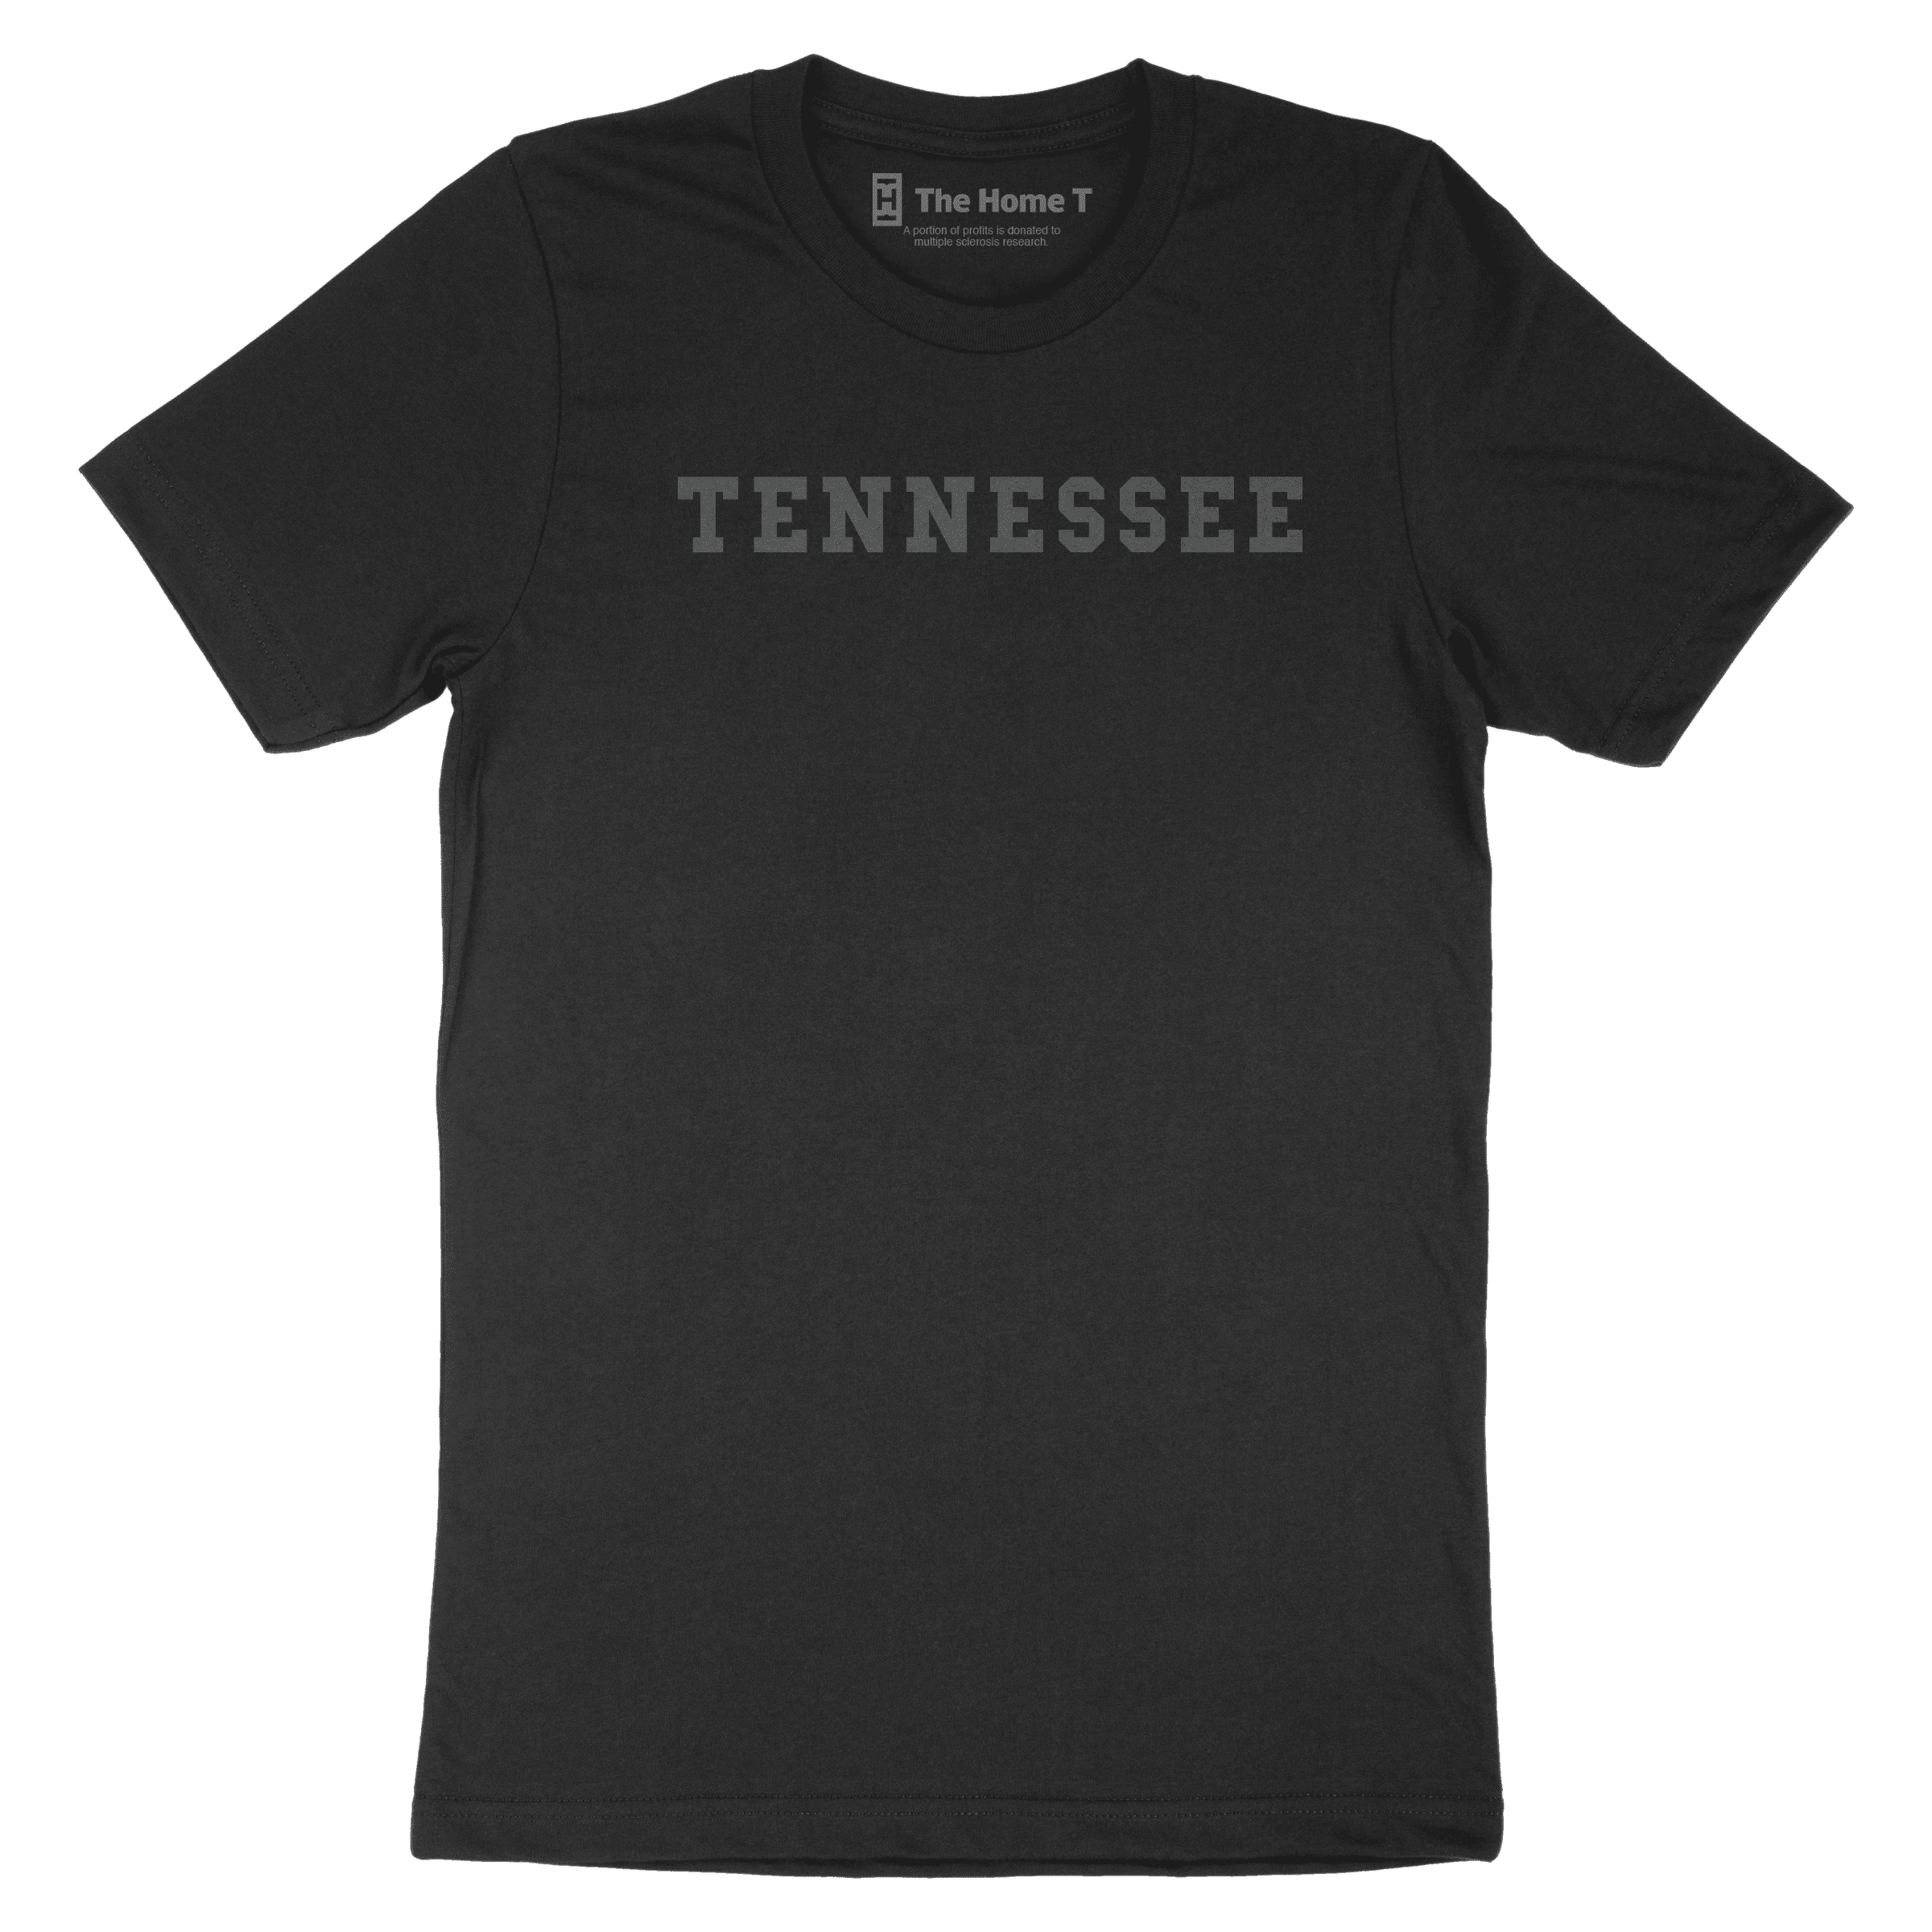 Tennessee Black on Black